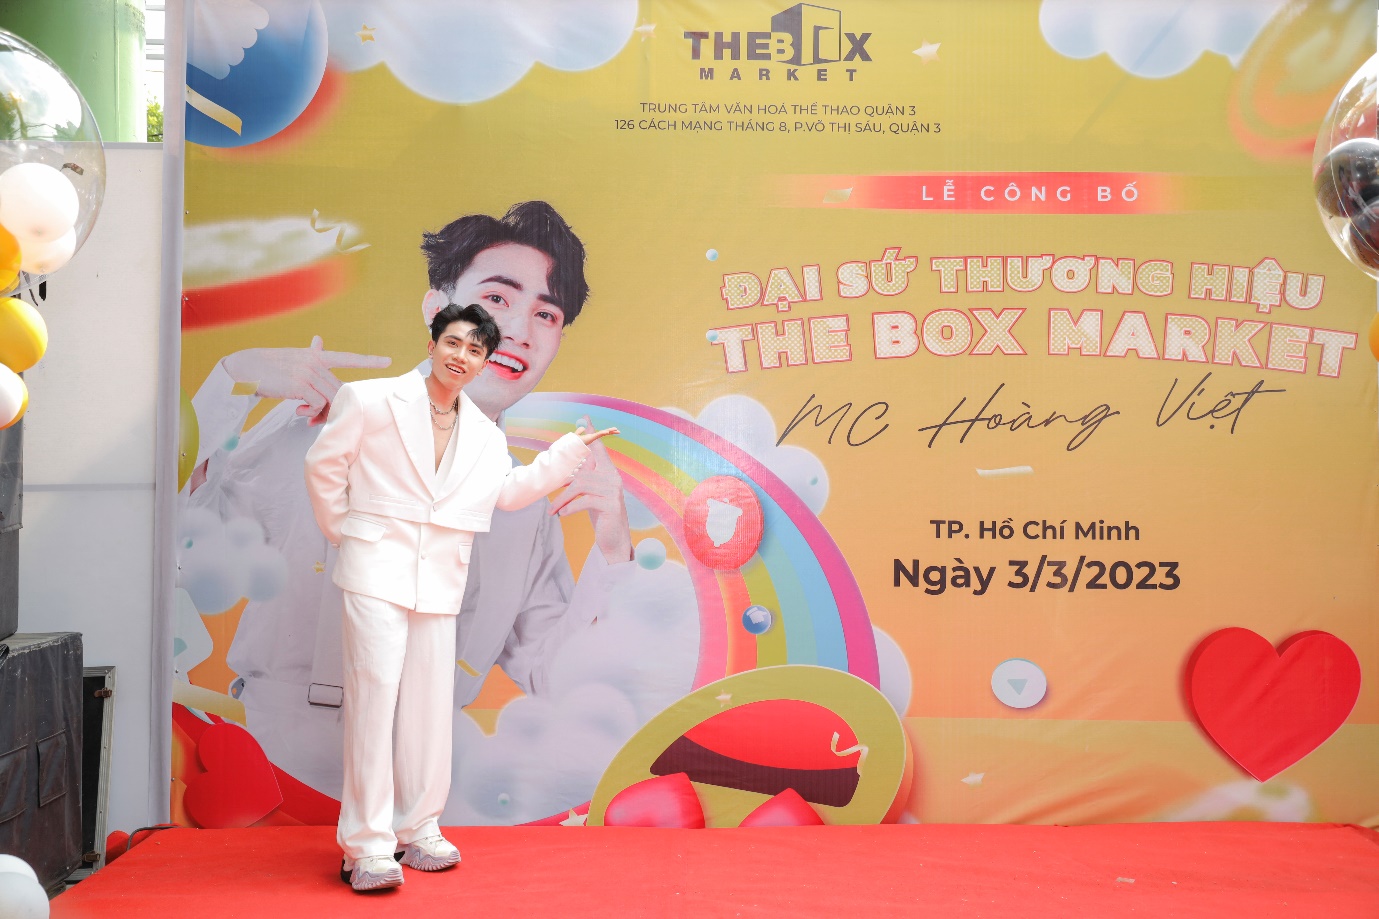 Hoàng Việt trở thành Đại sứ thương hiệu The Box Market ở tuổi 23 - Ảnh 3.